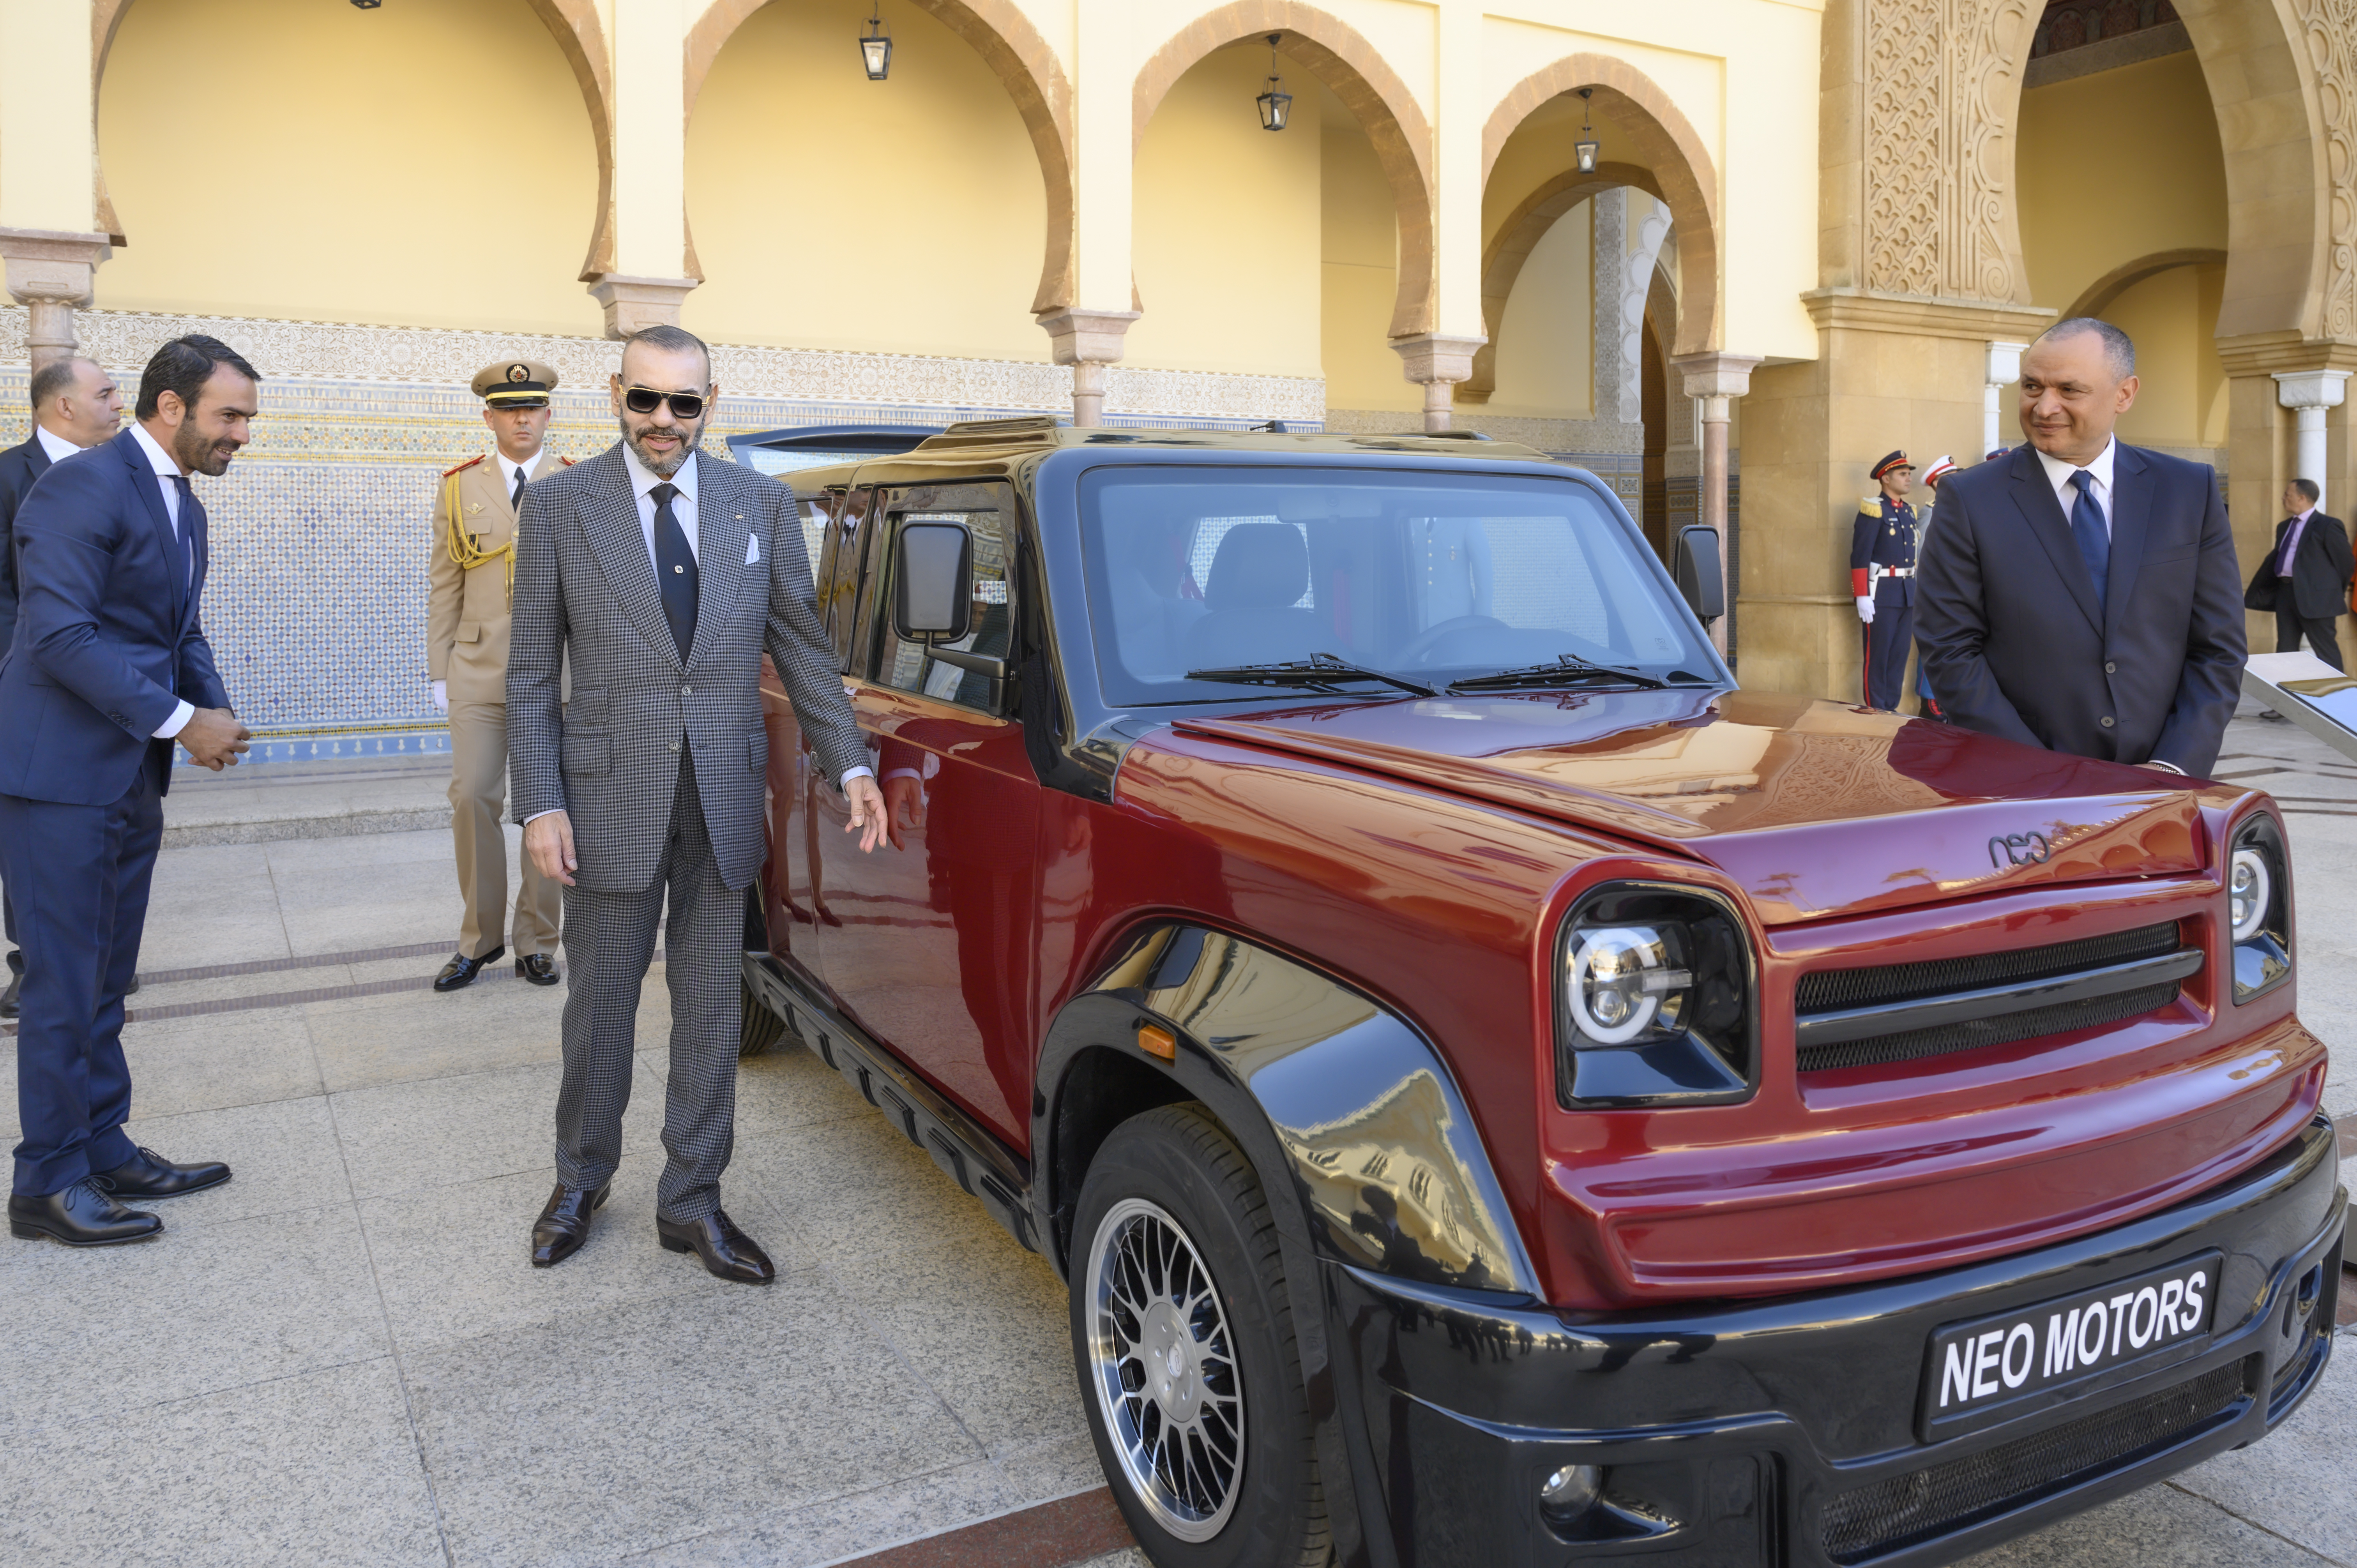 Présentation à S.M. le Roi d'un modèle de la 1ère marque automobile grand public marocaine et du prototype de véhicule à hydrogène d’initiative marocaine